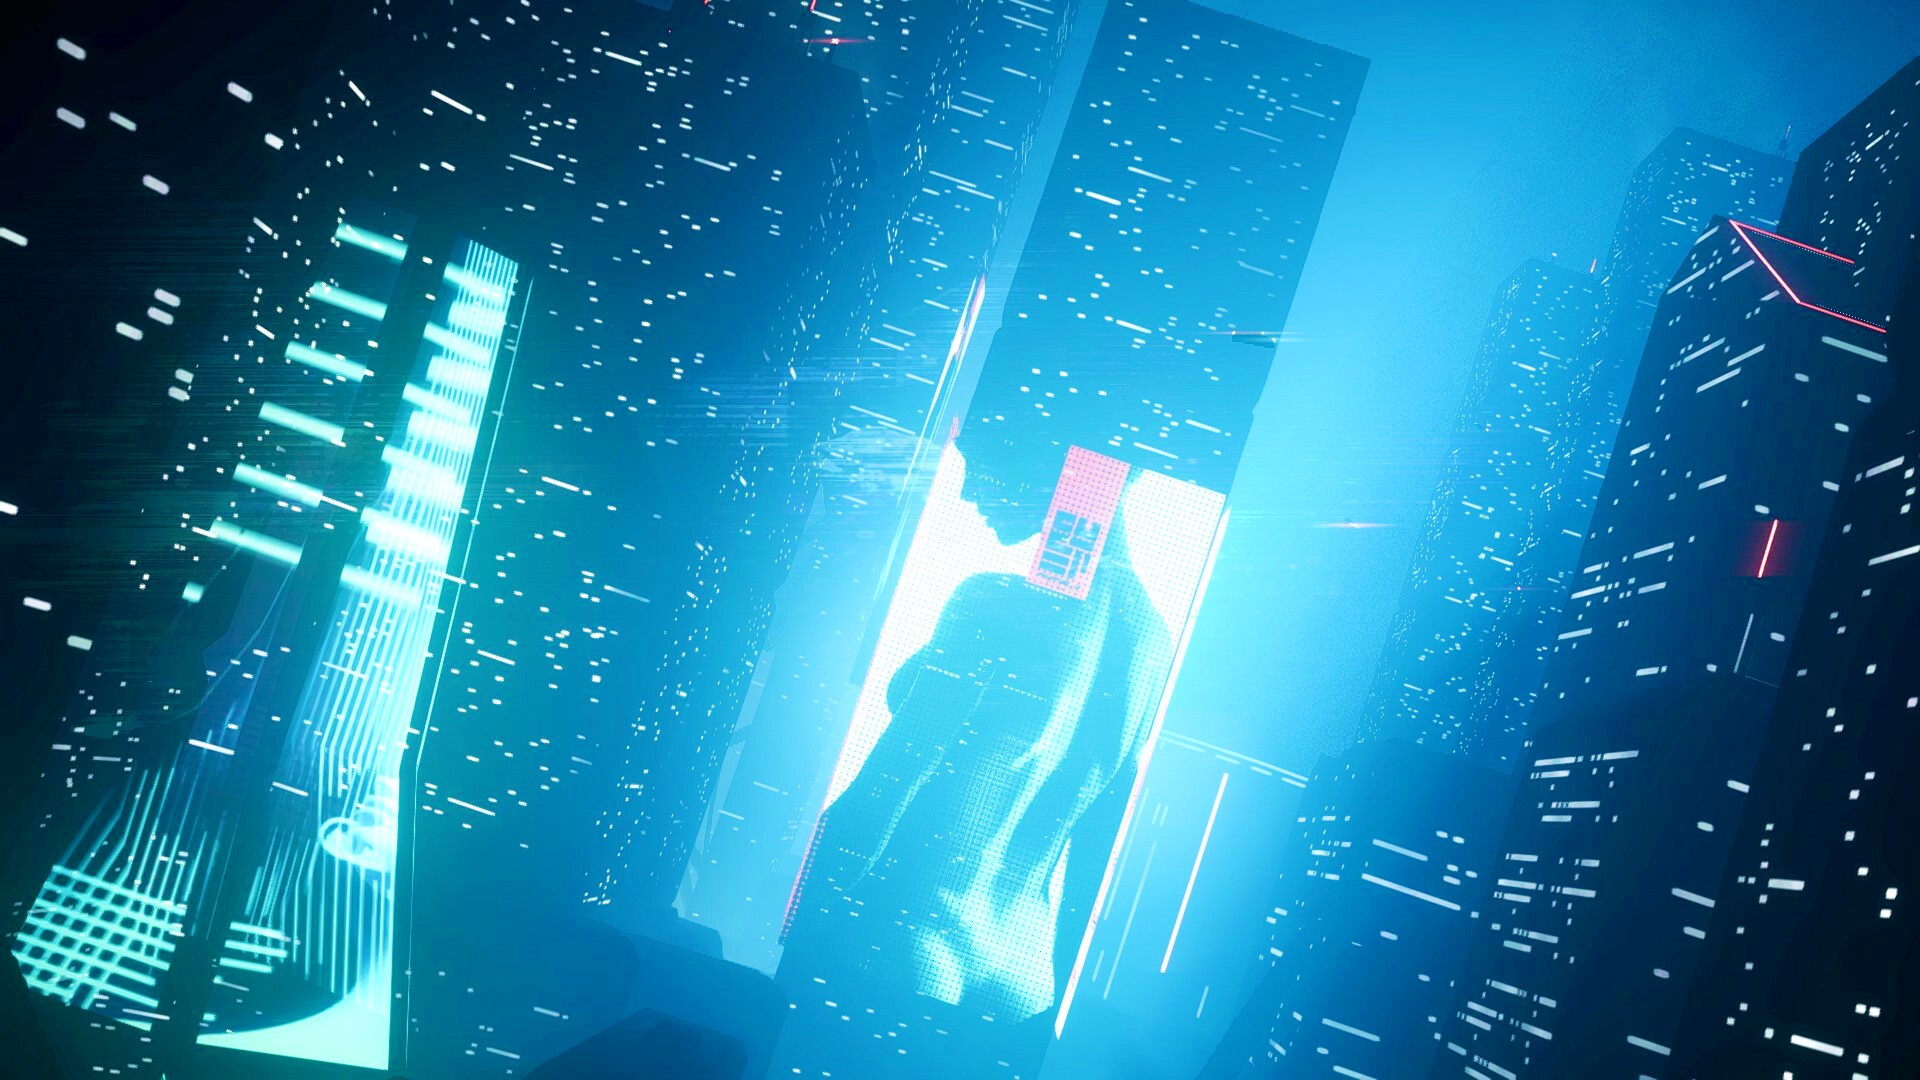 Cities Skylines 2 meets Cyberpunk 2077 in stunning new Steam builder